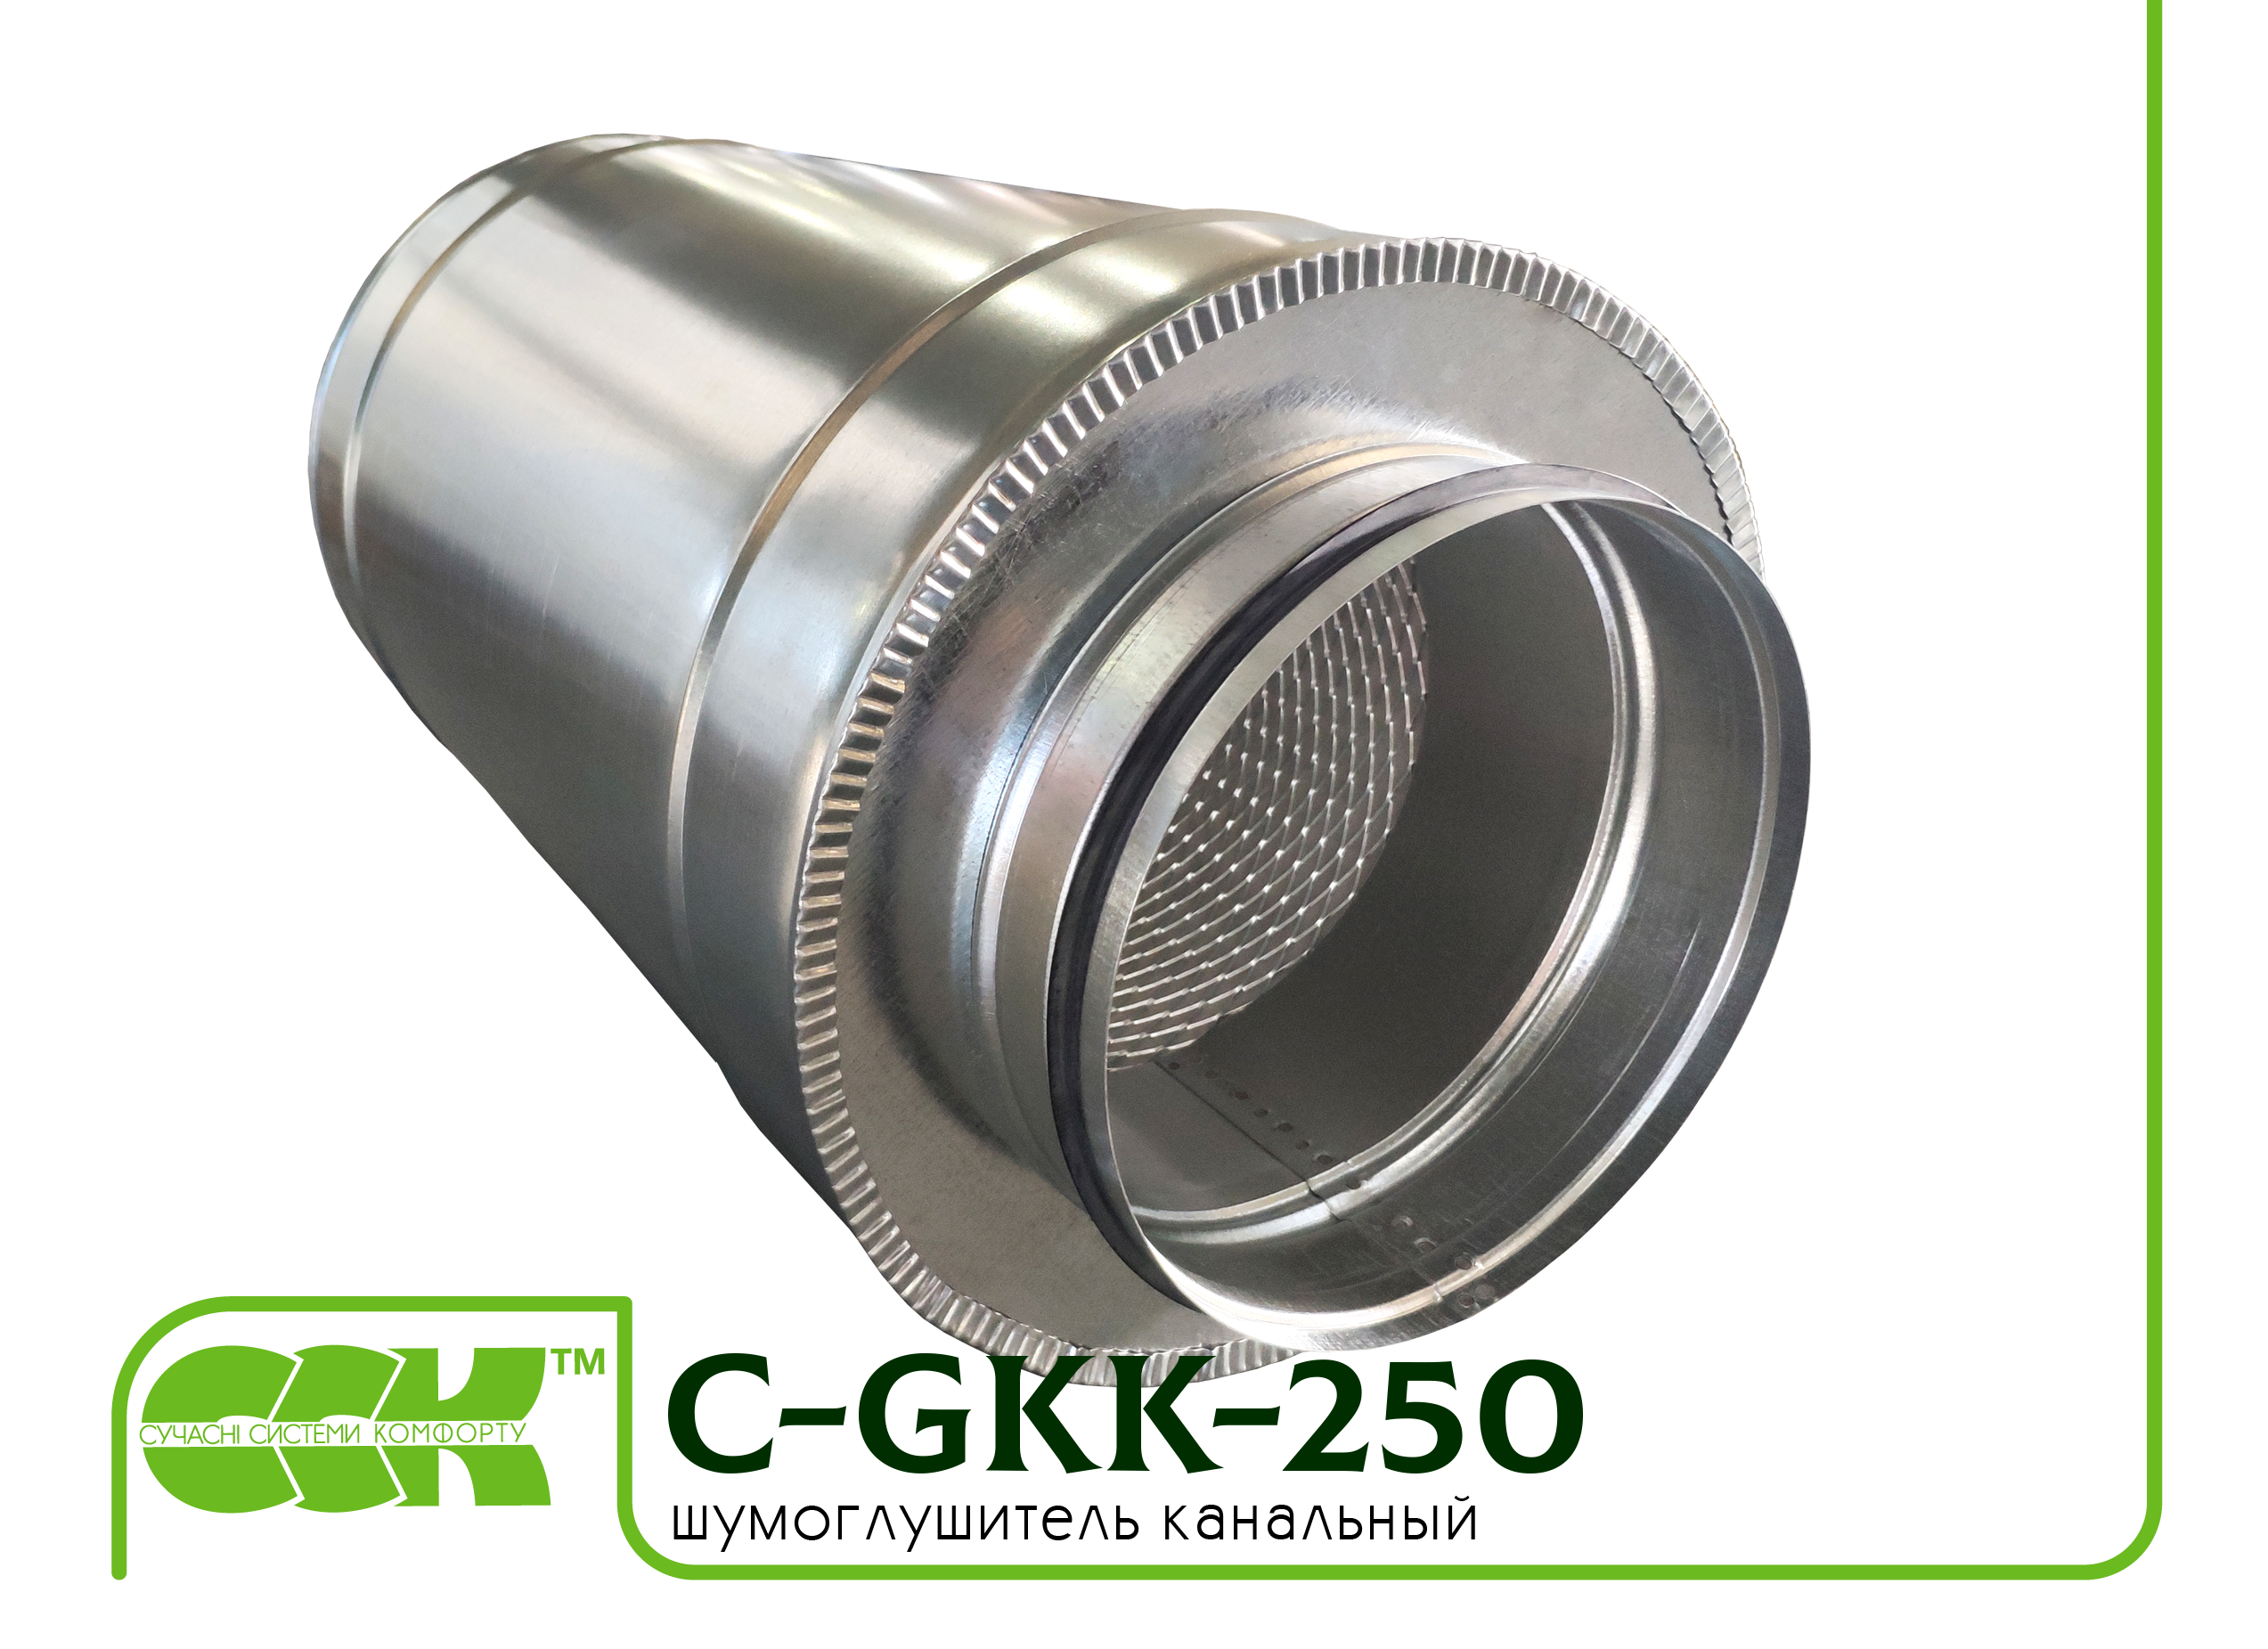 Шумоглушитель трубчатый для круглых каналов C-GKK-250-600